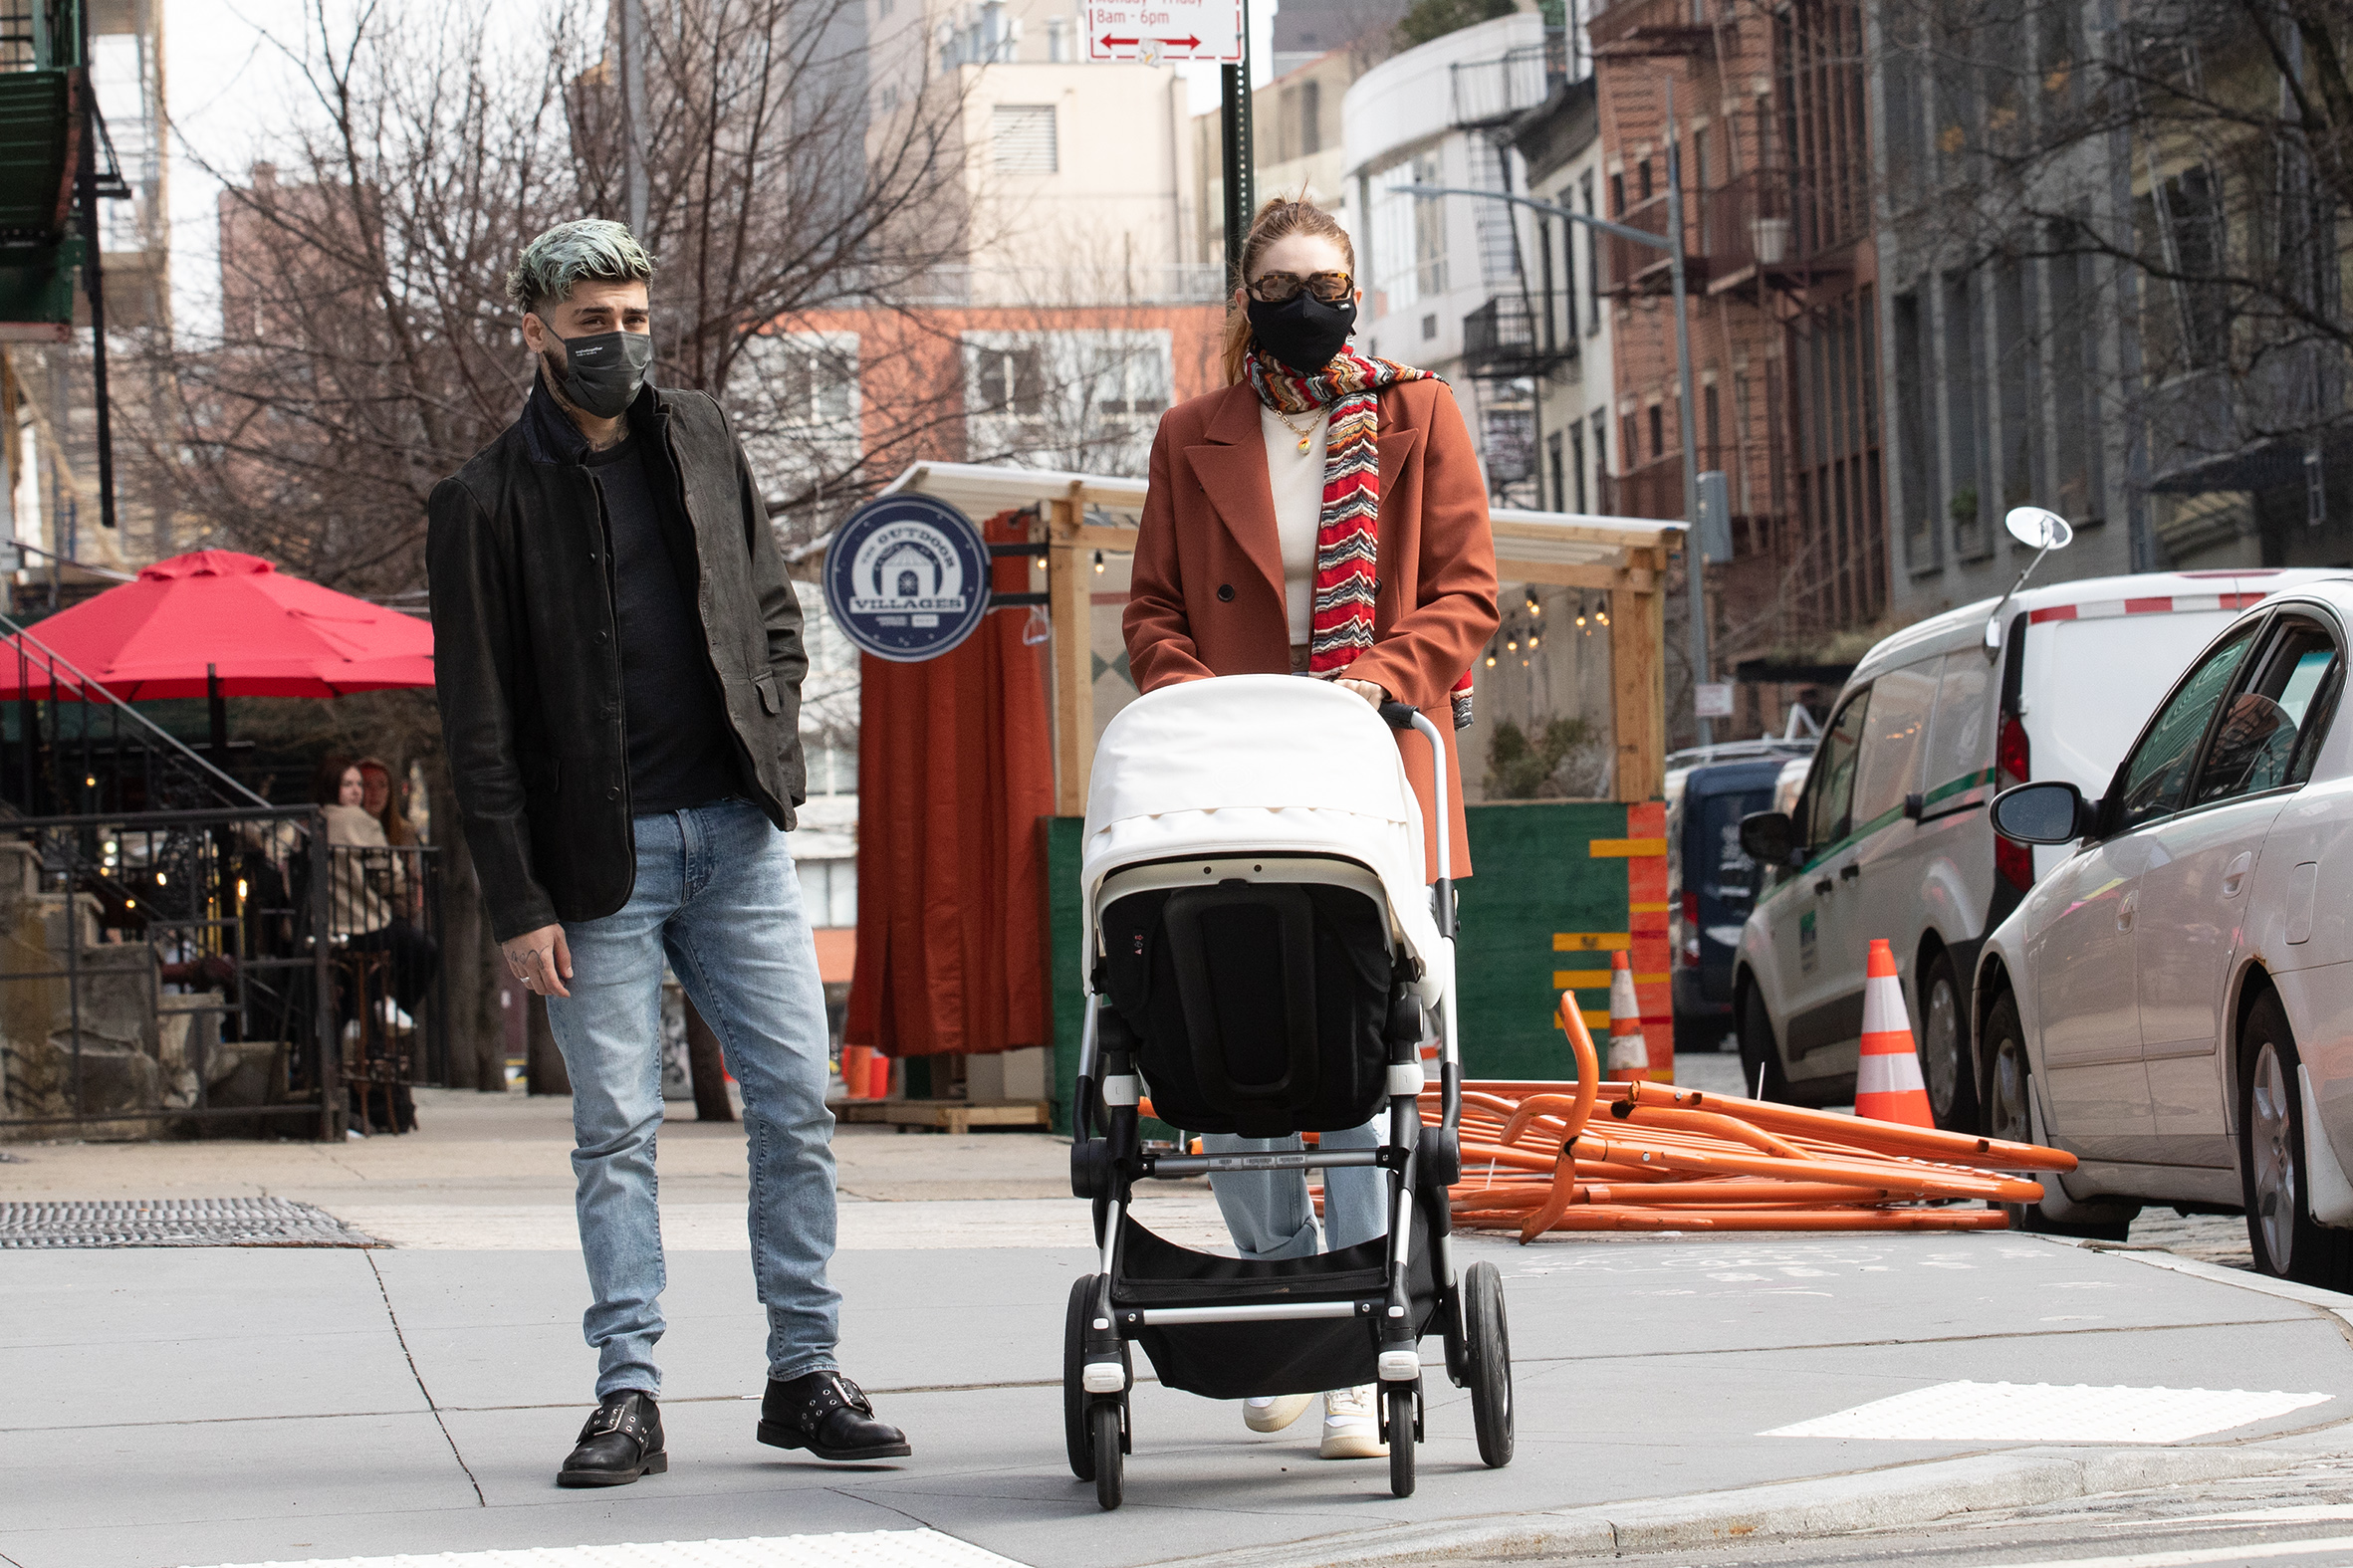 Zayn Malik and Gigi Hadid pushing a stroller with their baby